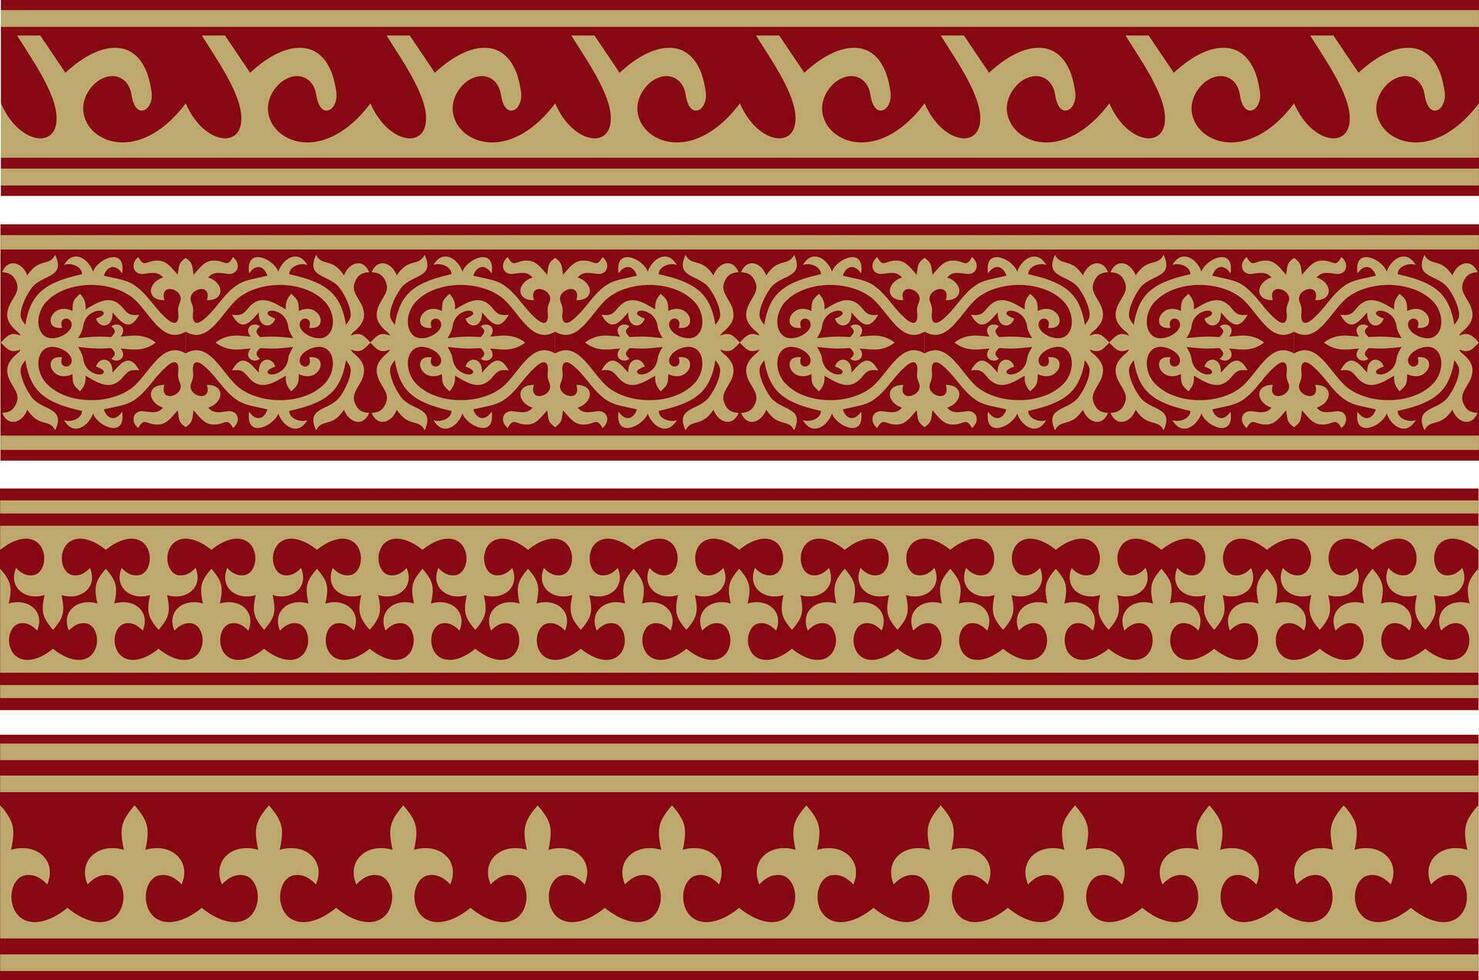 vector rood en goud naadloos Kazachs nationaal ornament. etnisch eindeloos patroon van de volkeren van de Super goed steppe, .mongolen, Kirgizisch, kalmyks, begraven. cirkel, kader grens.